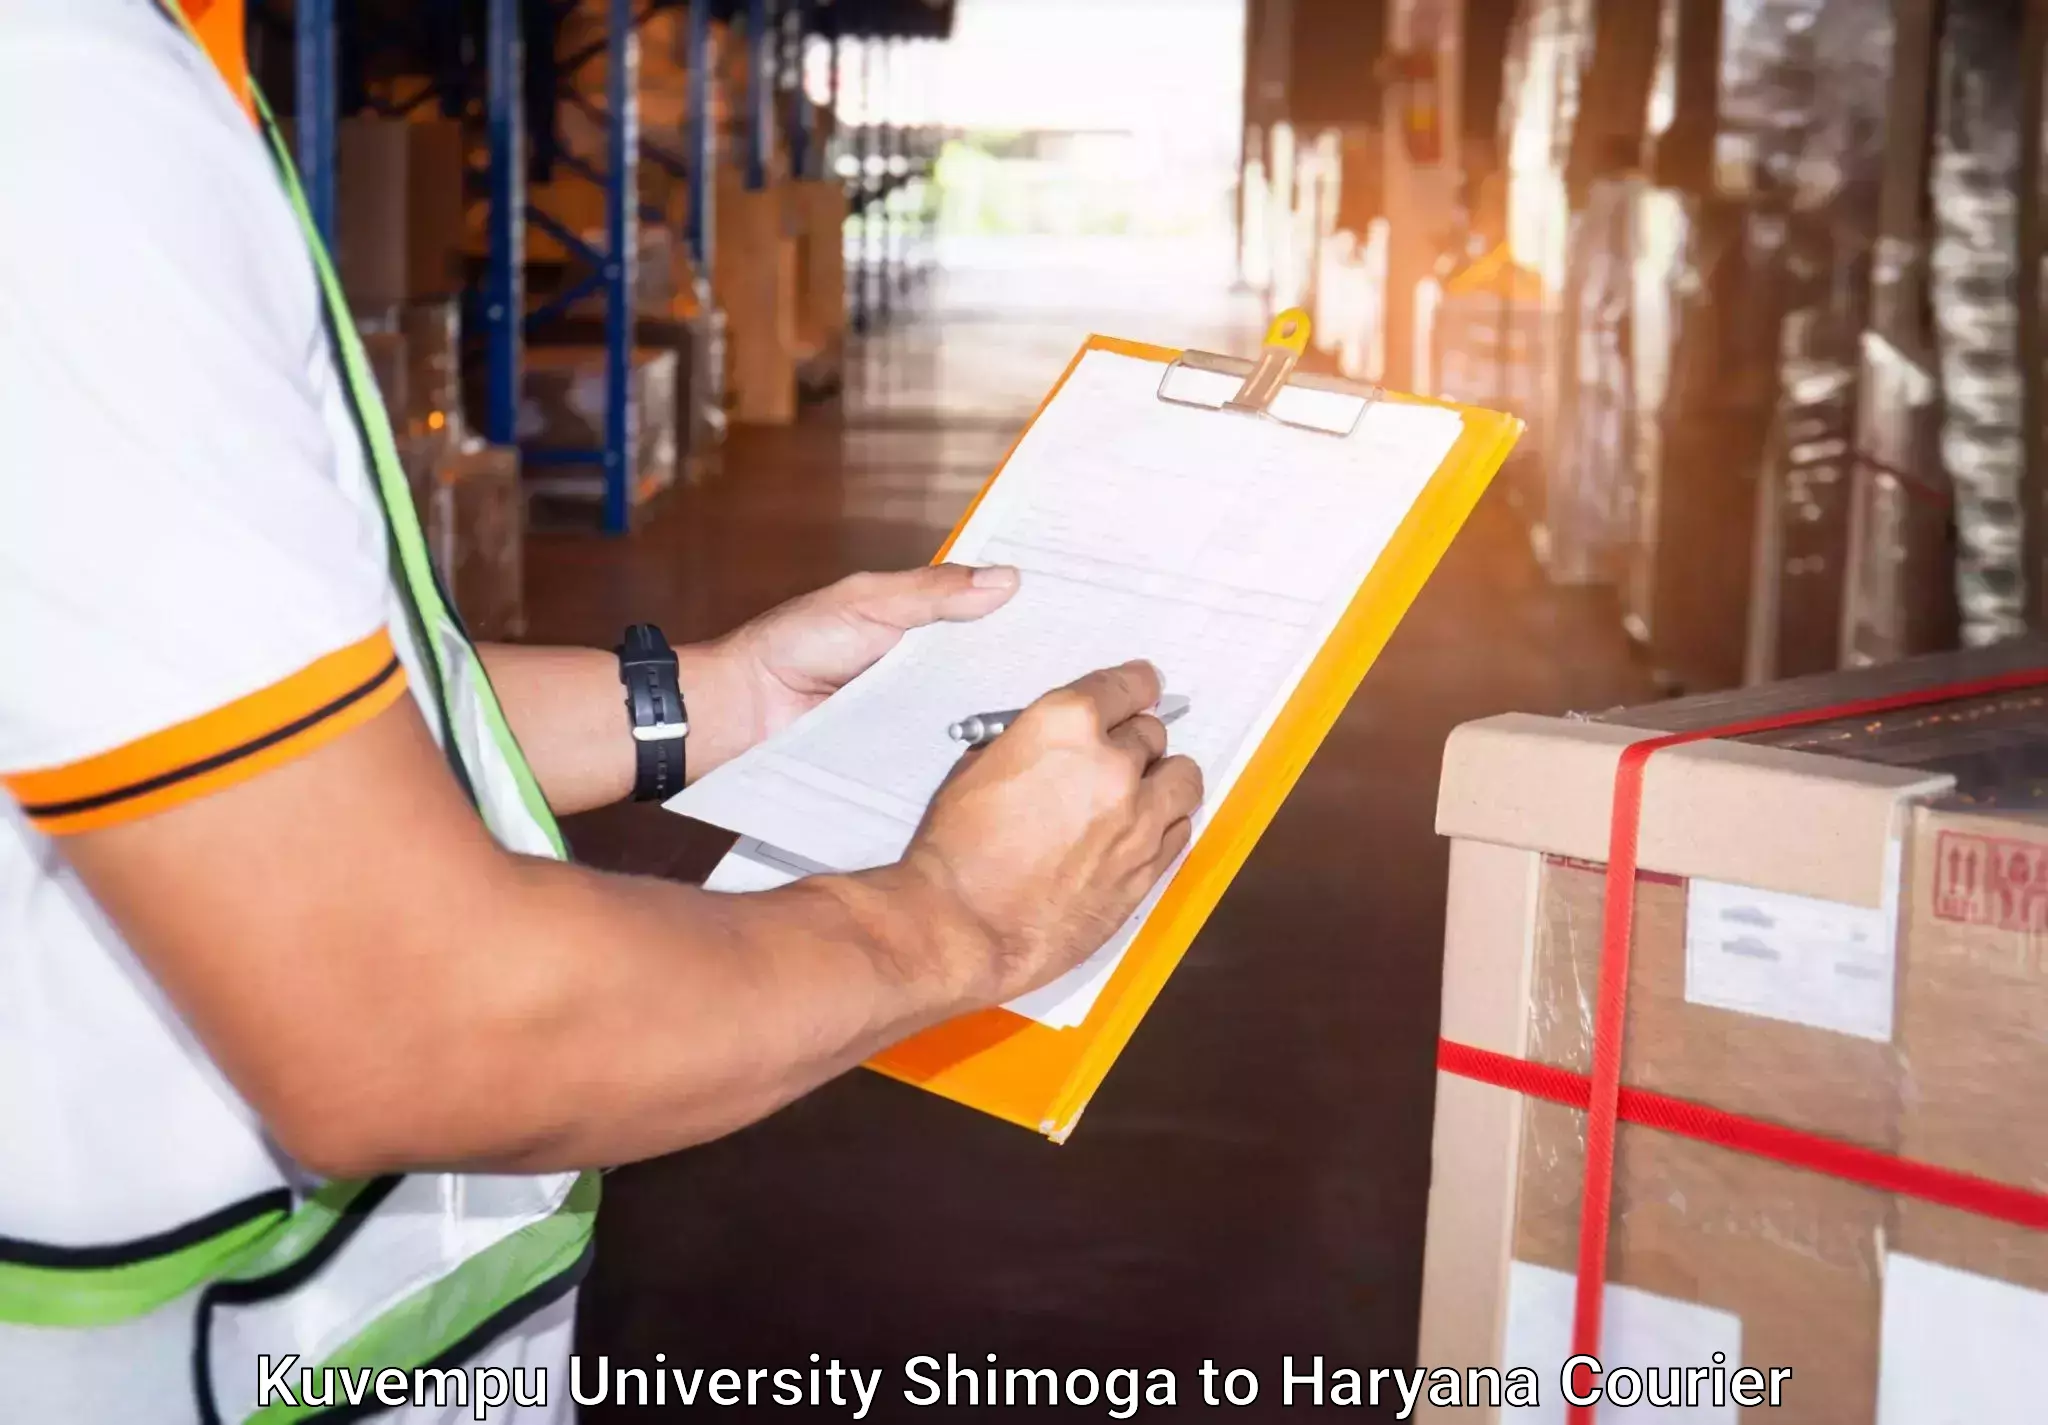 Baggage shipping calculator Kuvempu University Shimoga to Hansi